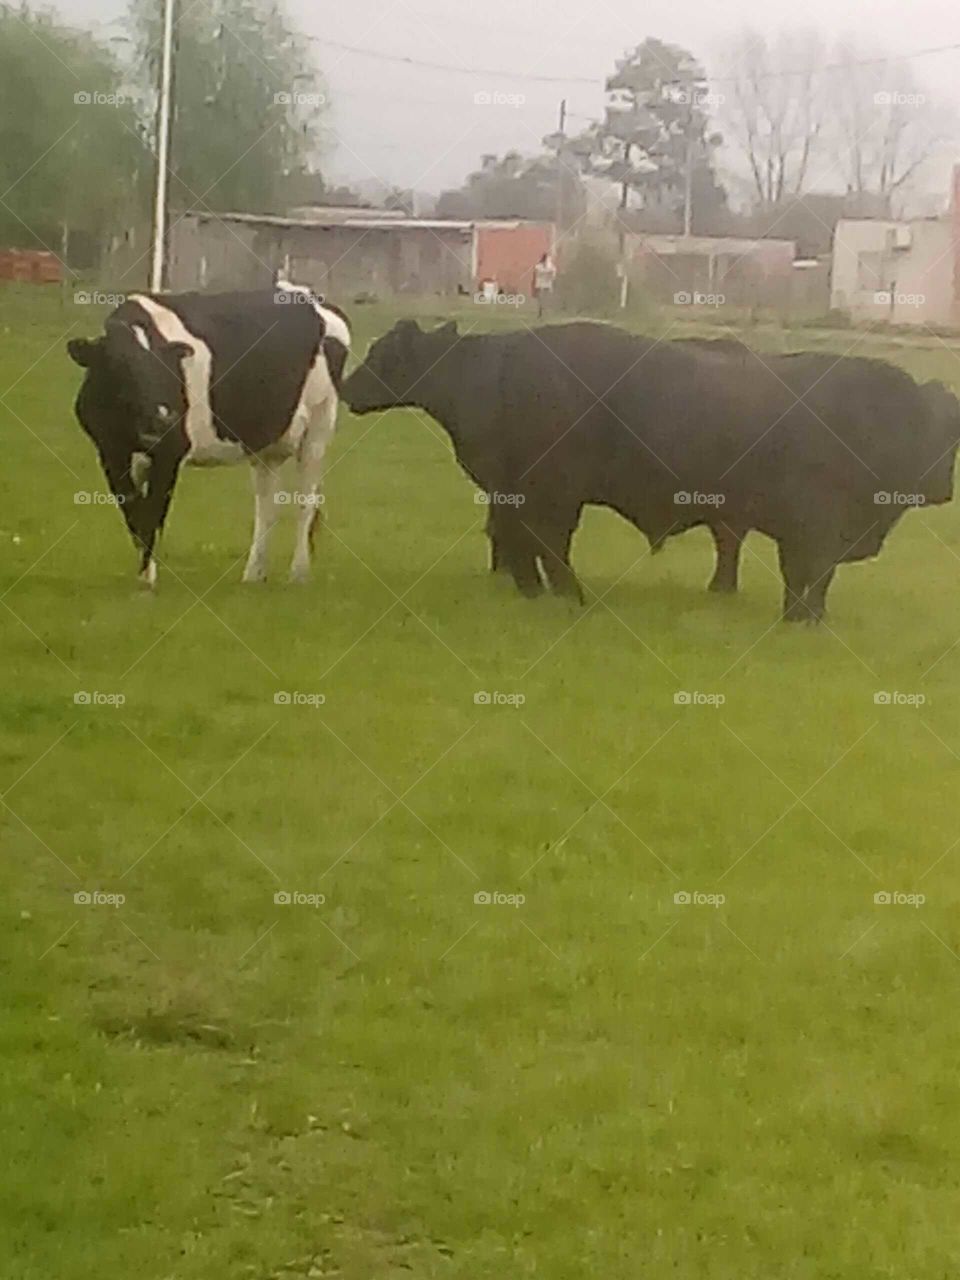 ganado bovino pastoreando en una plaza de pueblo